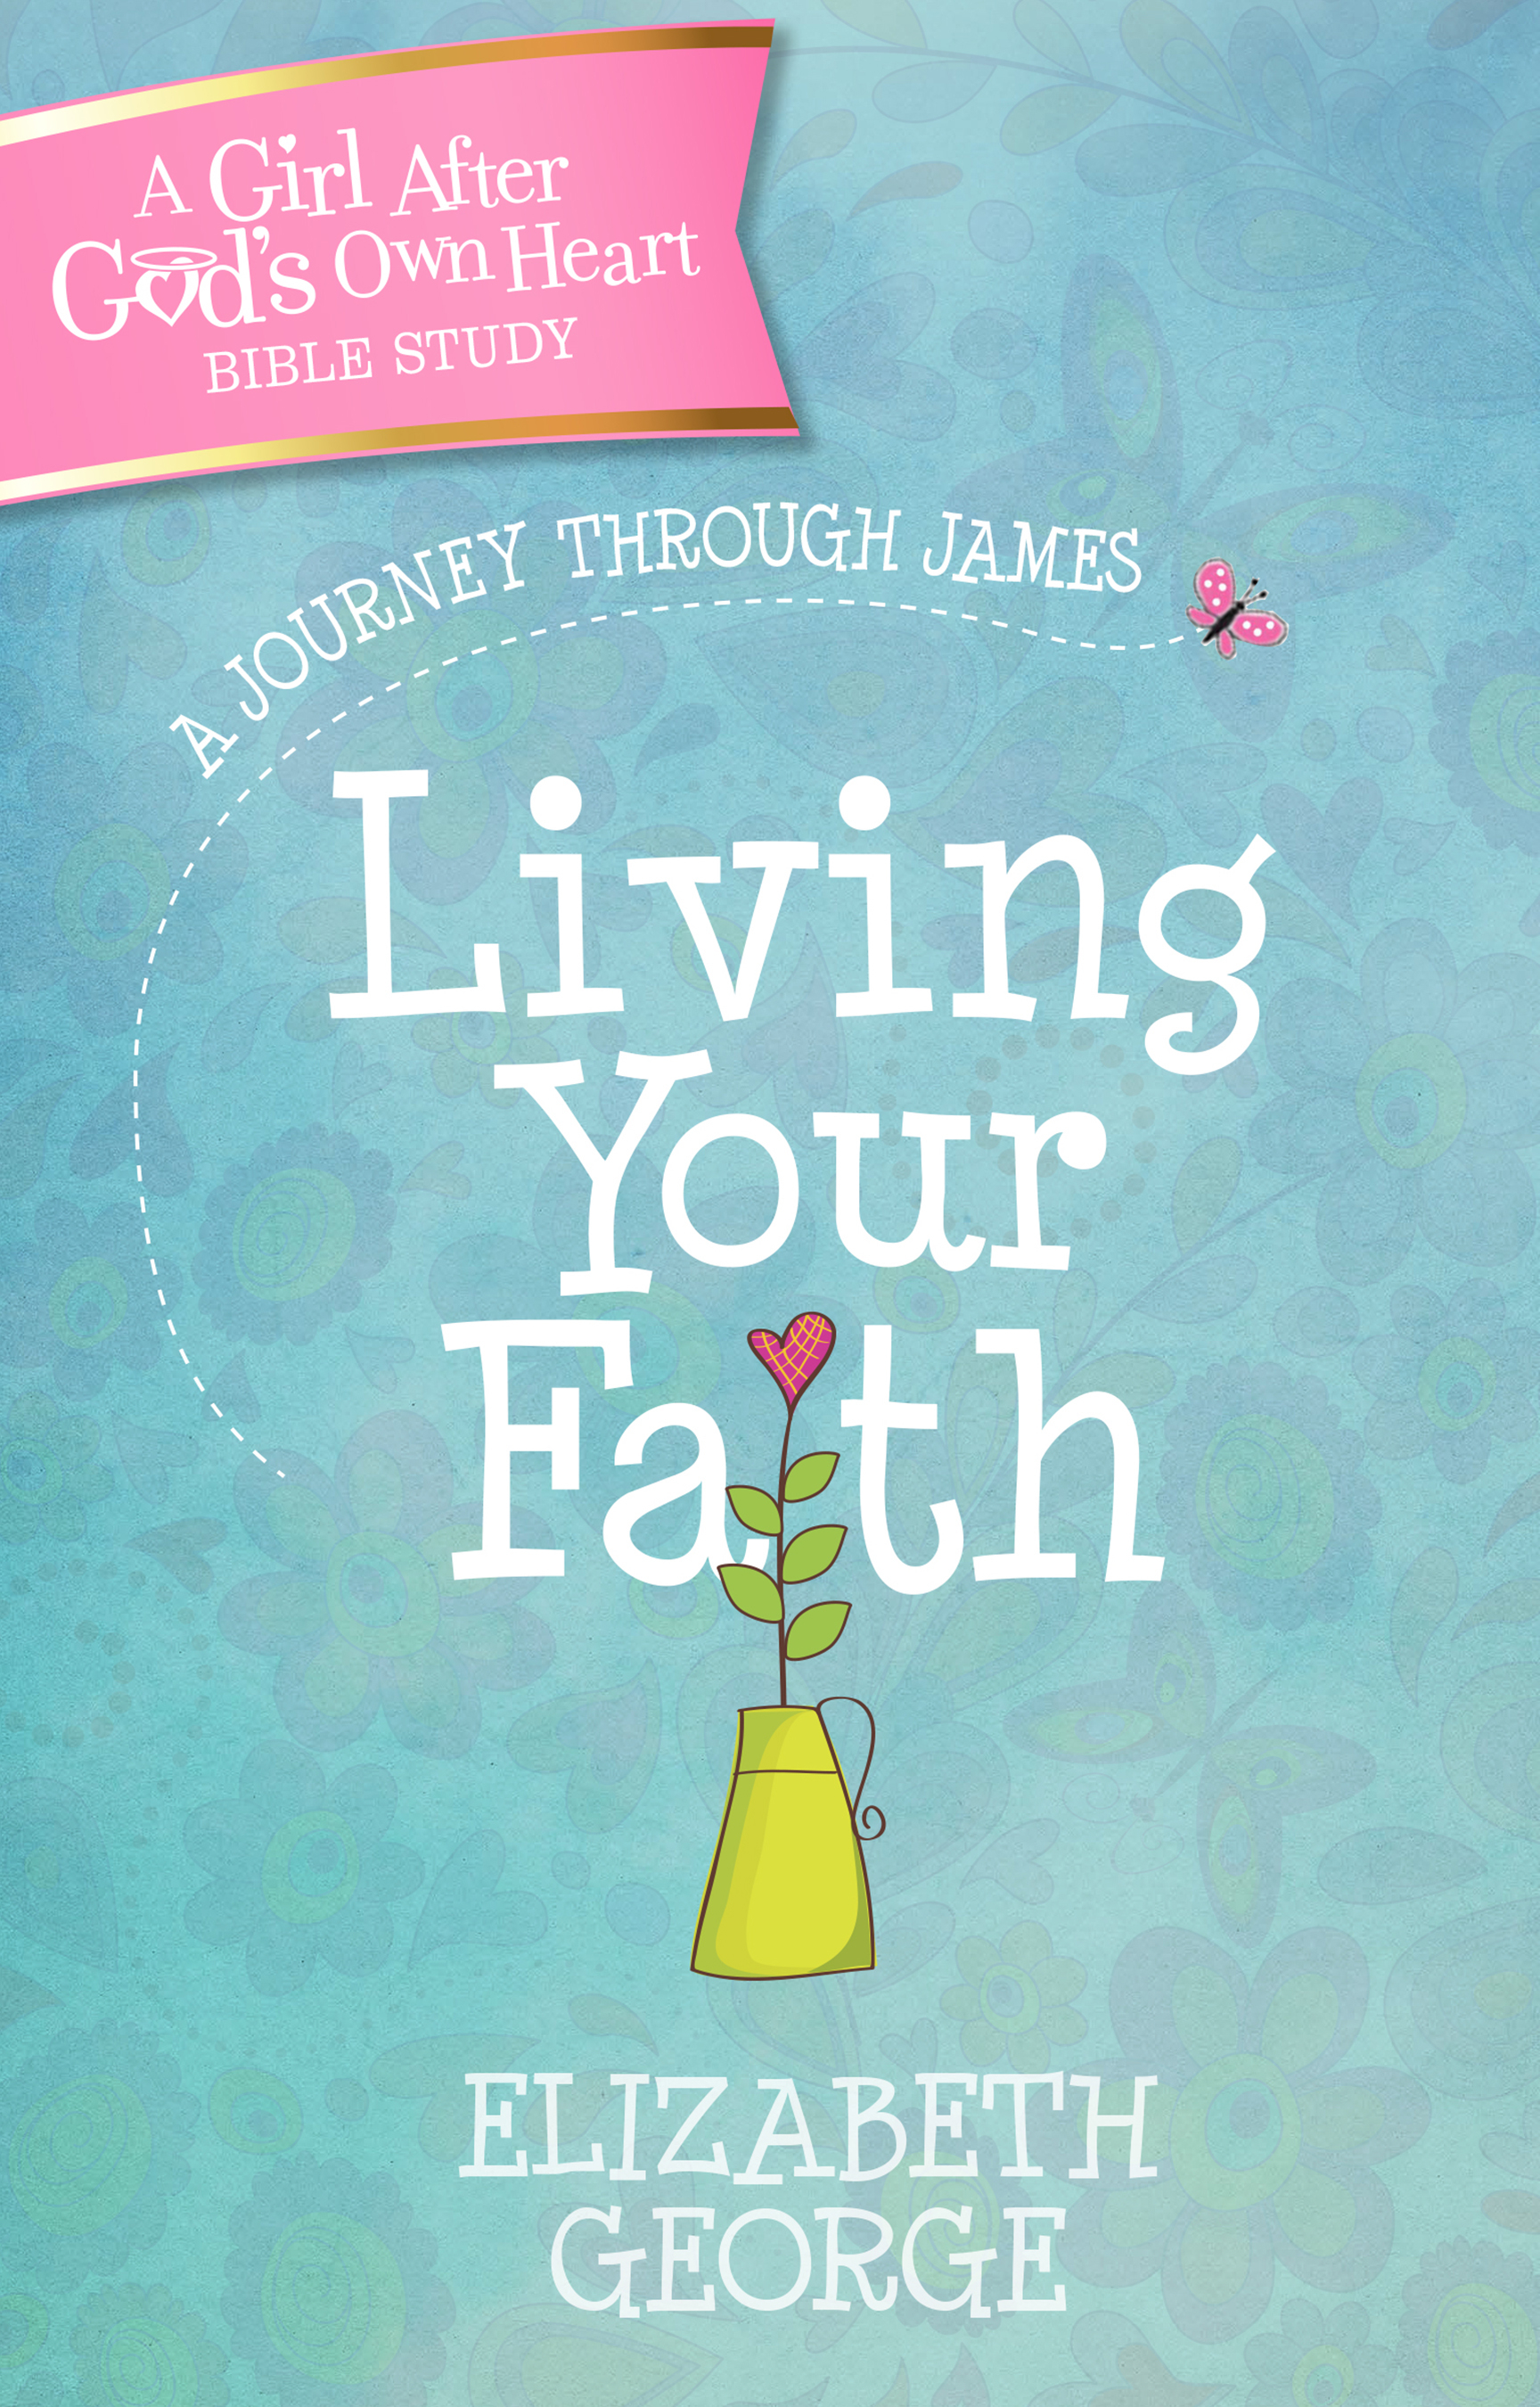 Living Your Faith